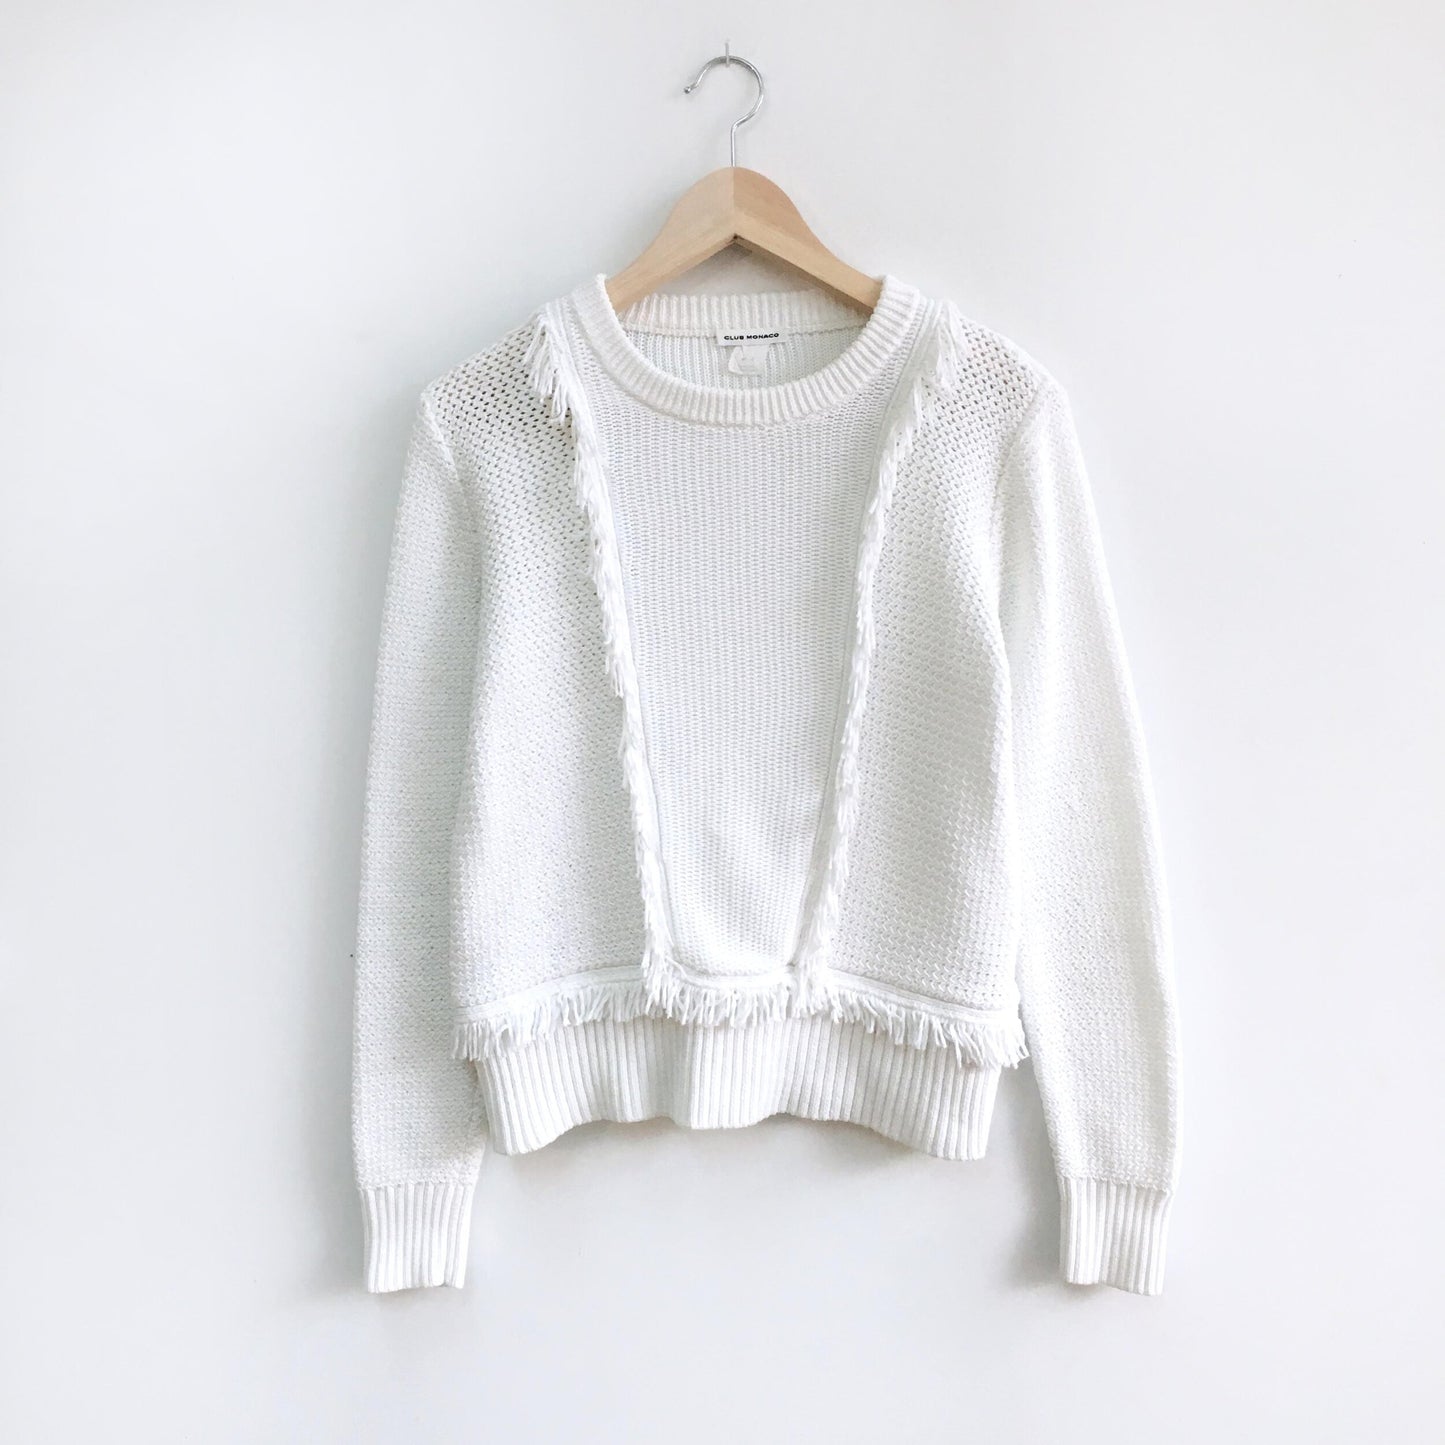 Club Monaco Martuska Fringe Sweater - size Medium